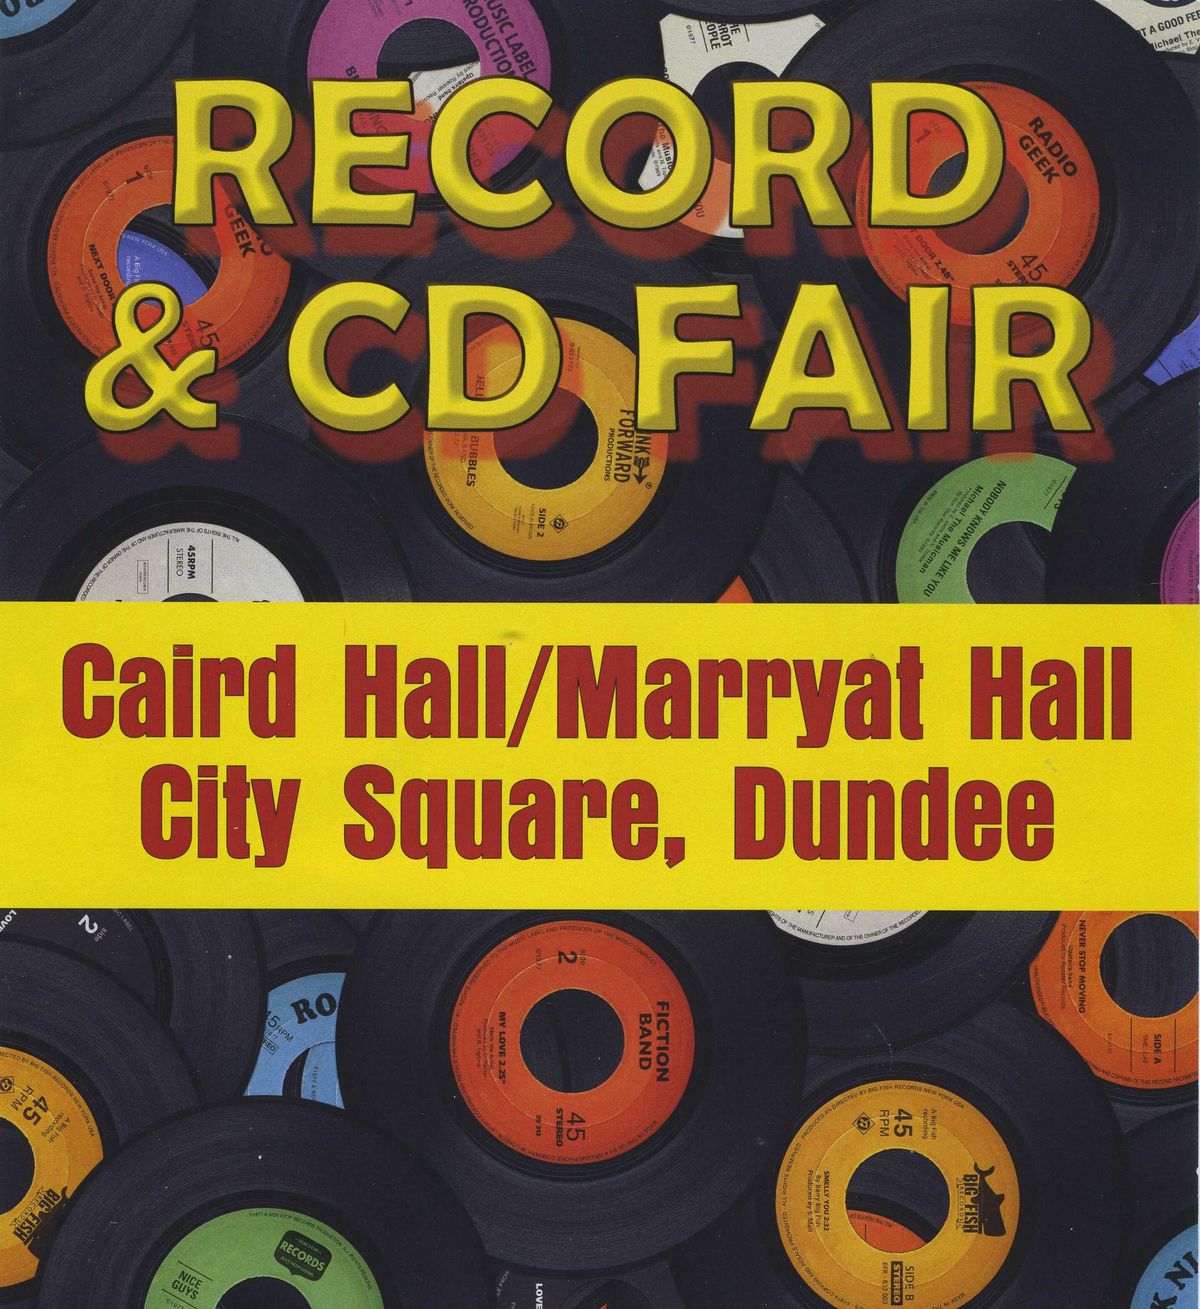 Dundee Record Fair